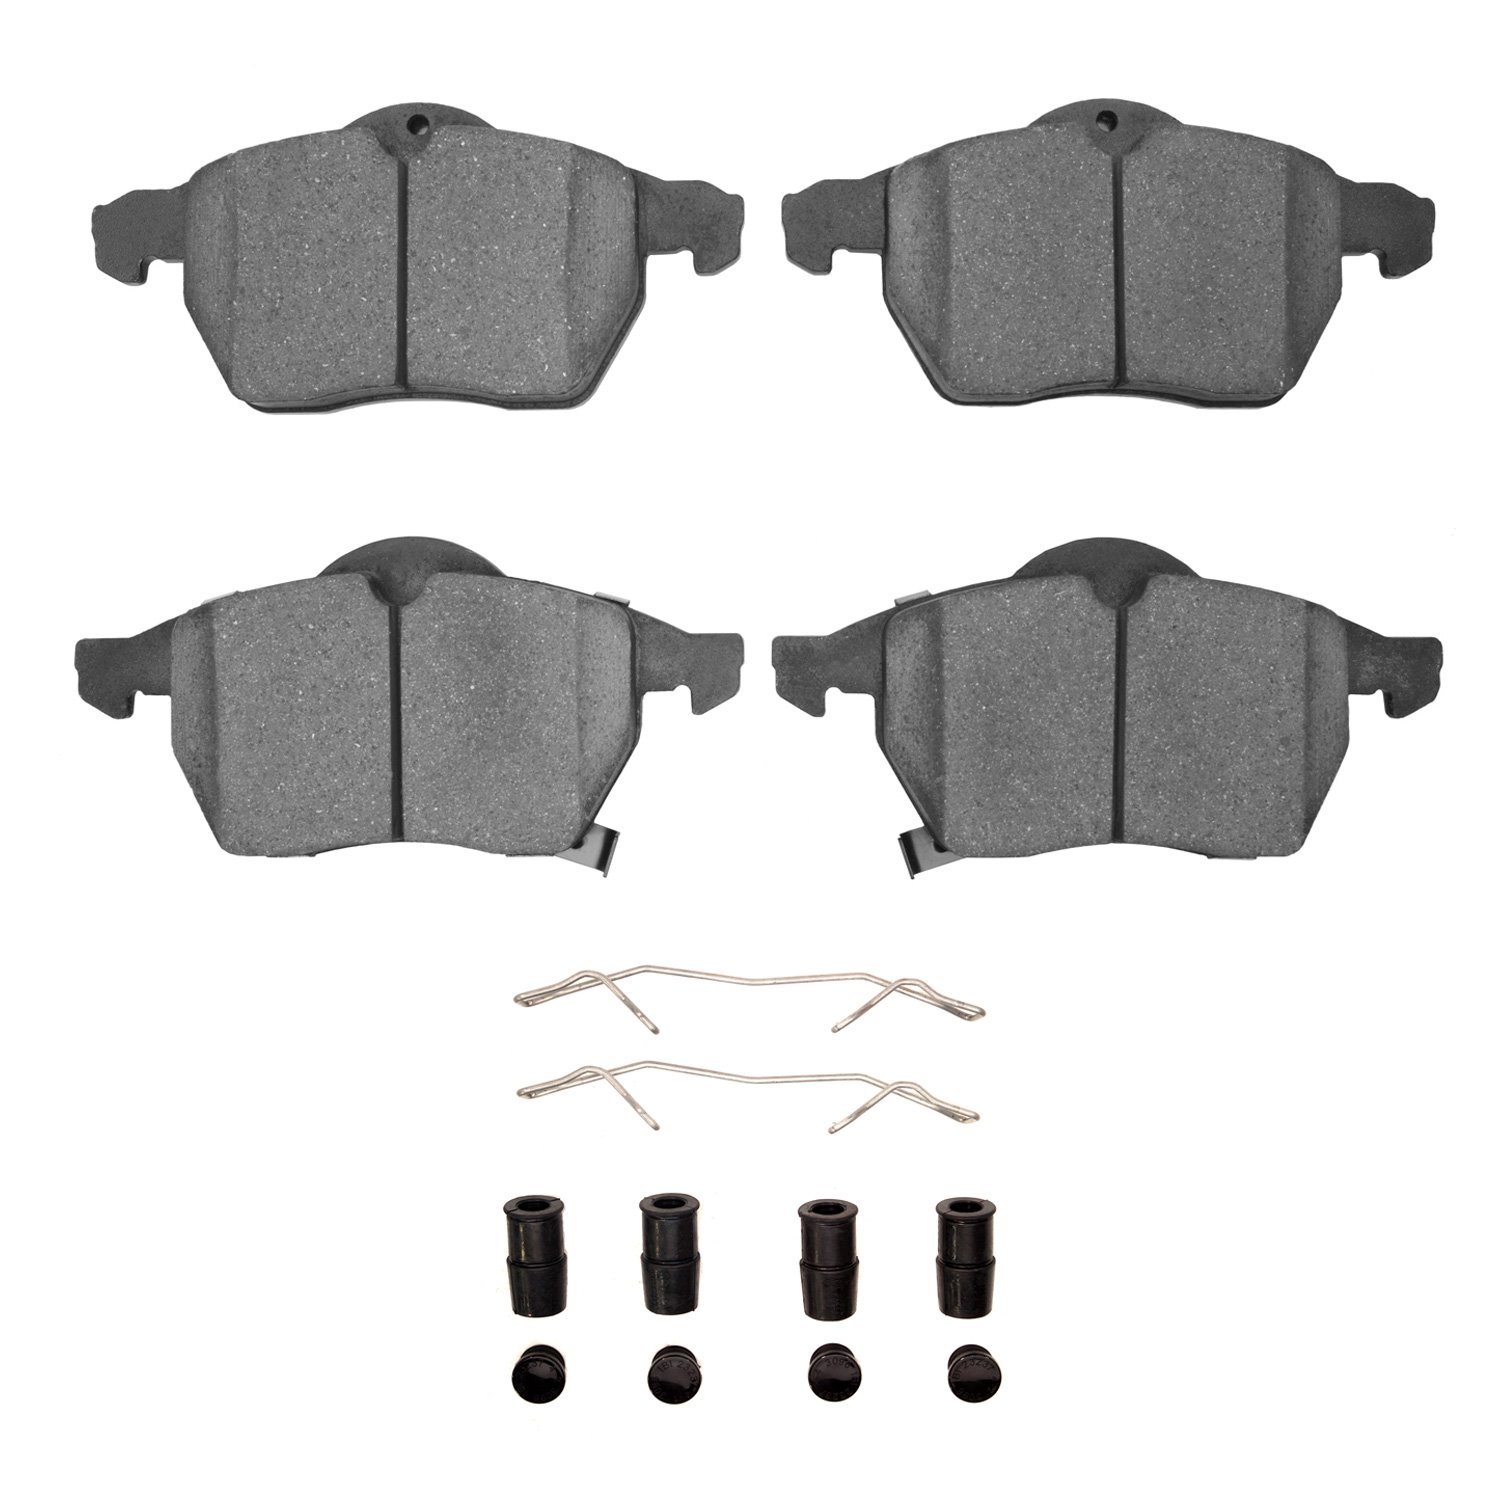 1311-0819-01 3000-Series Semi-Metallic Brake Pads & Hardware Kit, 1997-2010 GM, Position: Front